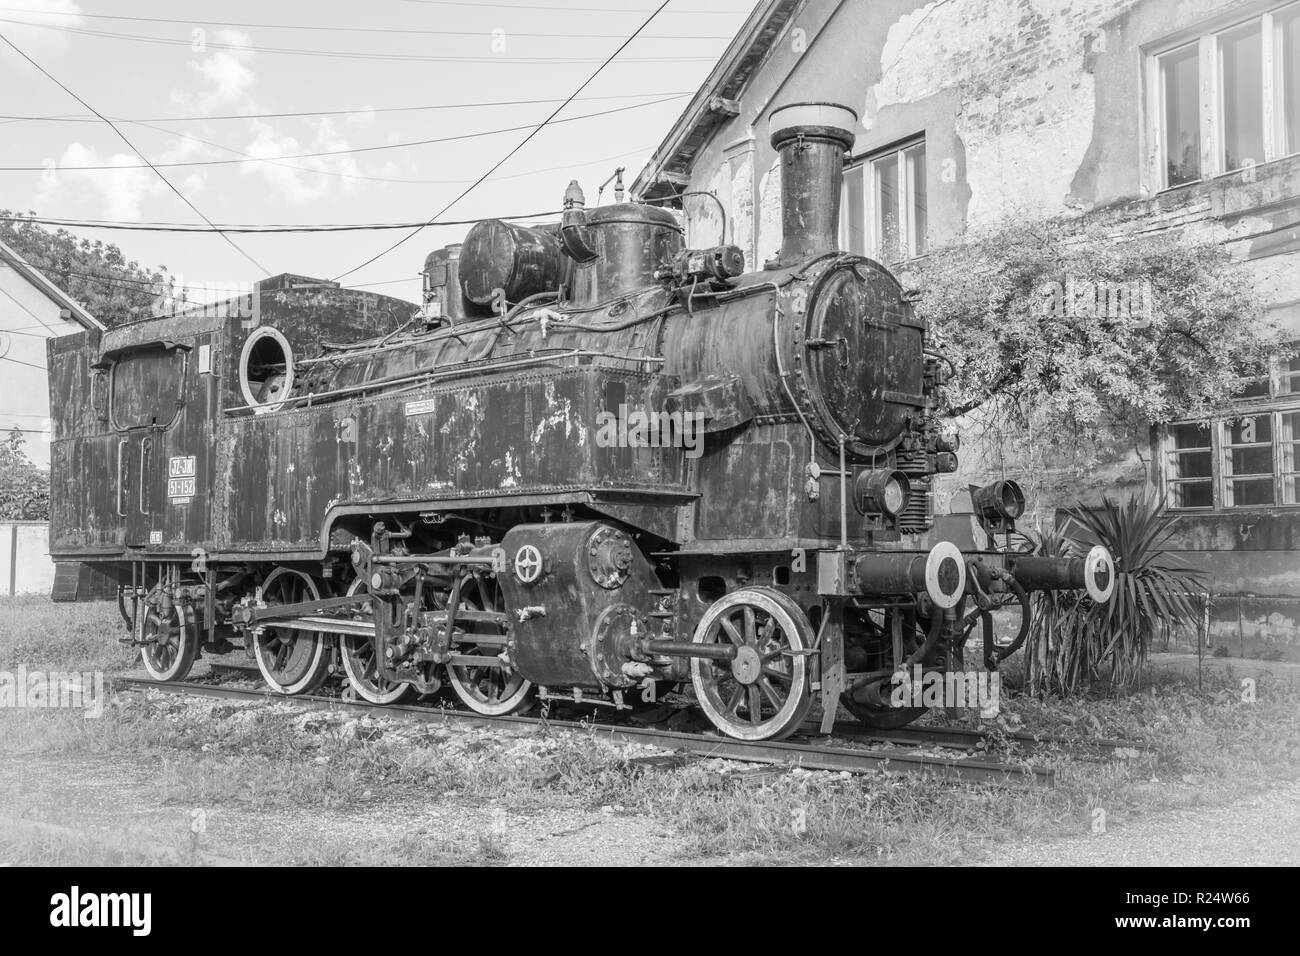 Vecchio treno jugoslavo nei pressi della vecchia stazione ferroviaria nella città di Vrsac Serbia Est Europa, in bianco e nero Foto Stock